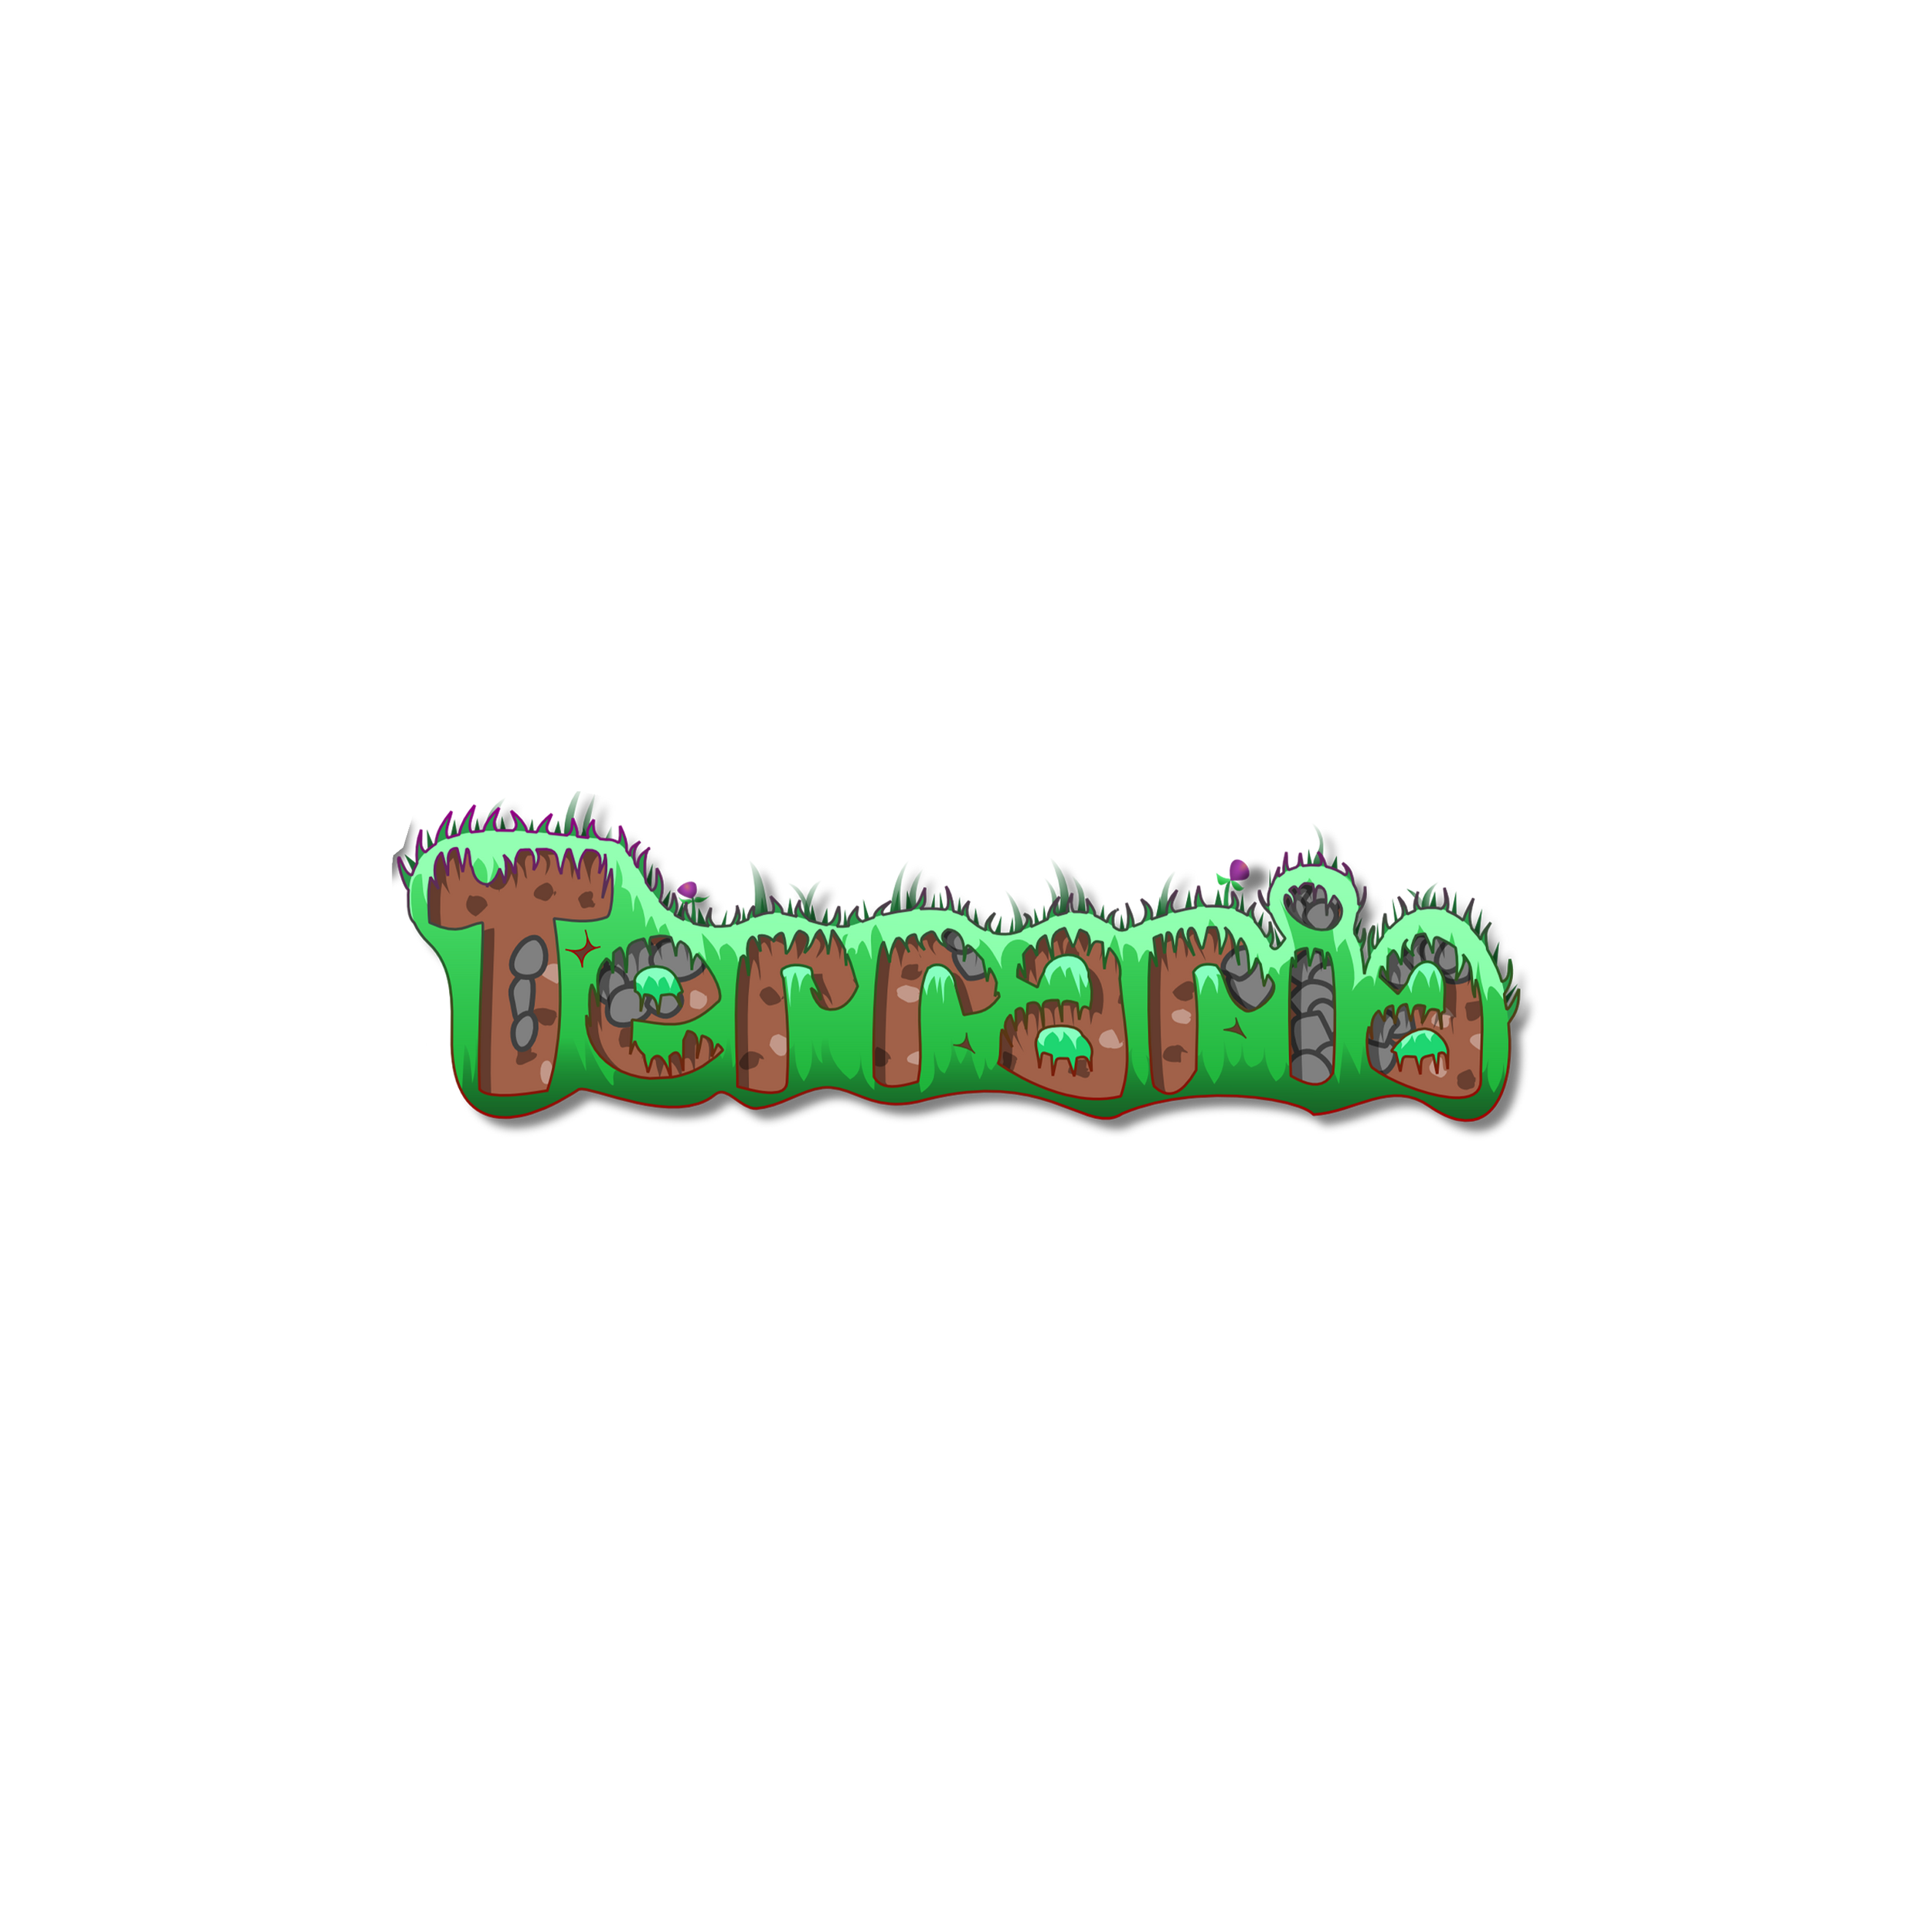 Terraria logo